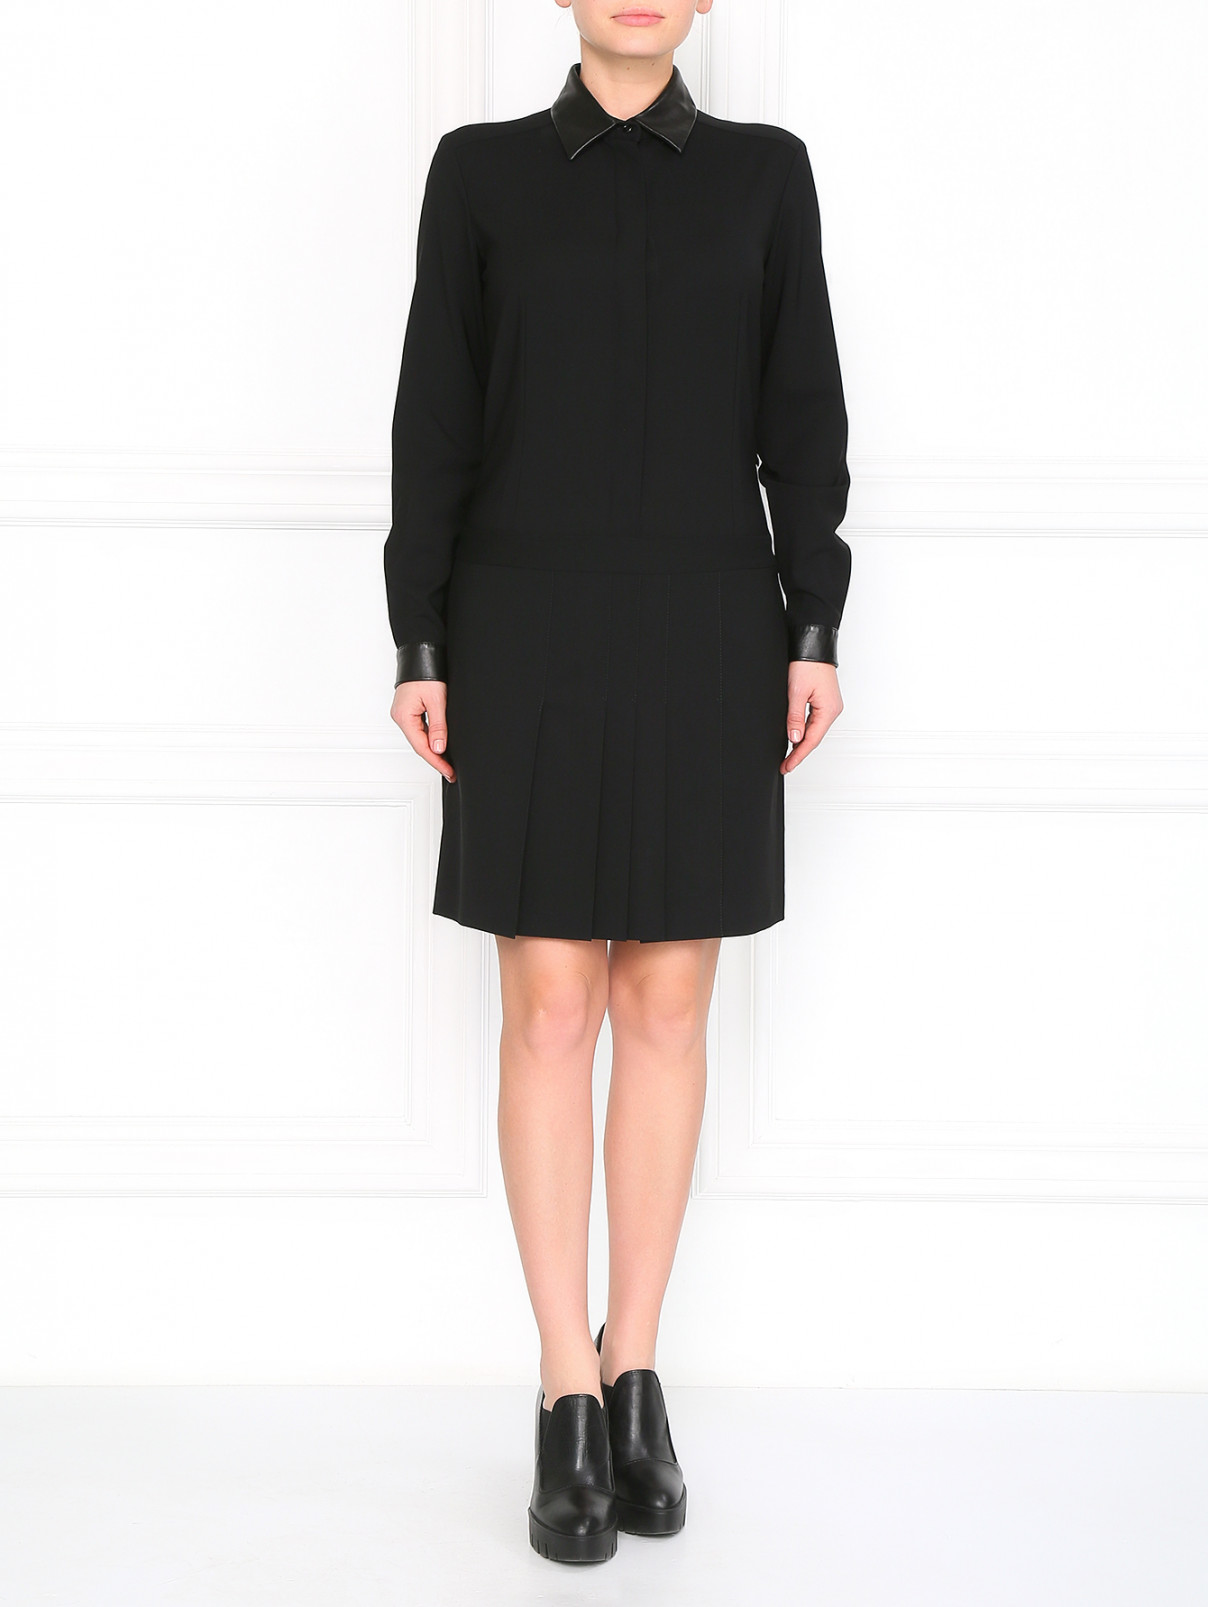 Платье с кожаным воротником Barbara Bui  –  Модель Общий вид  – Цвет:  Черный